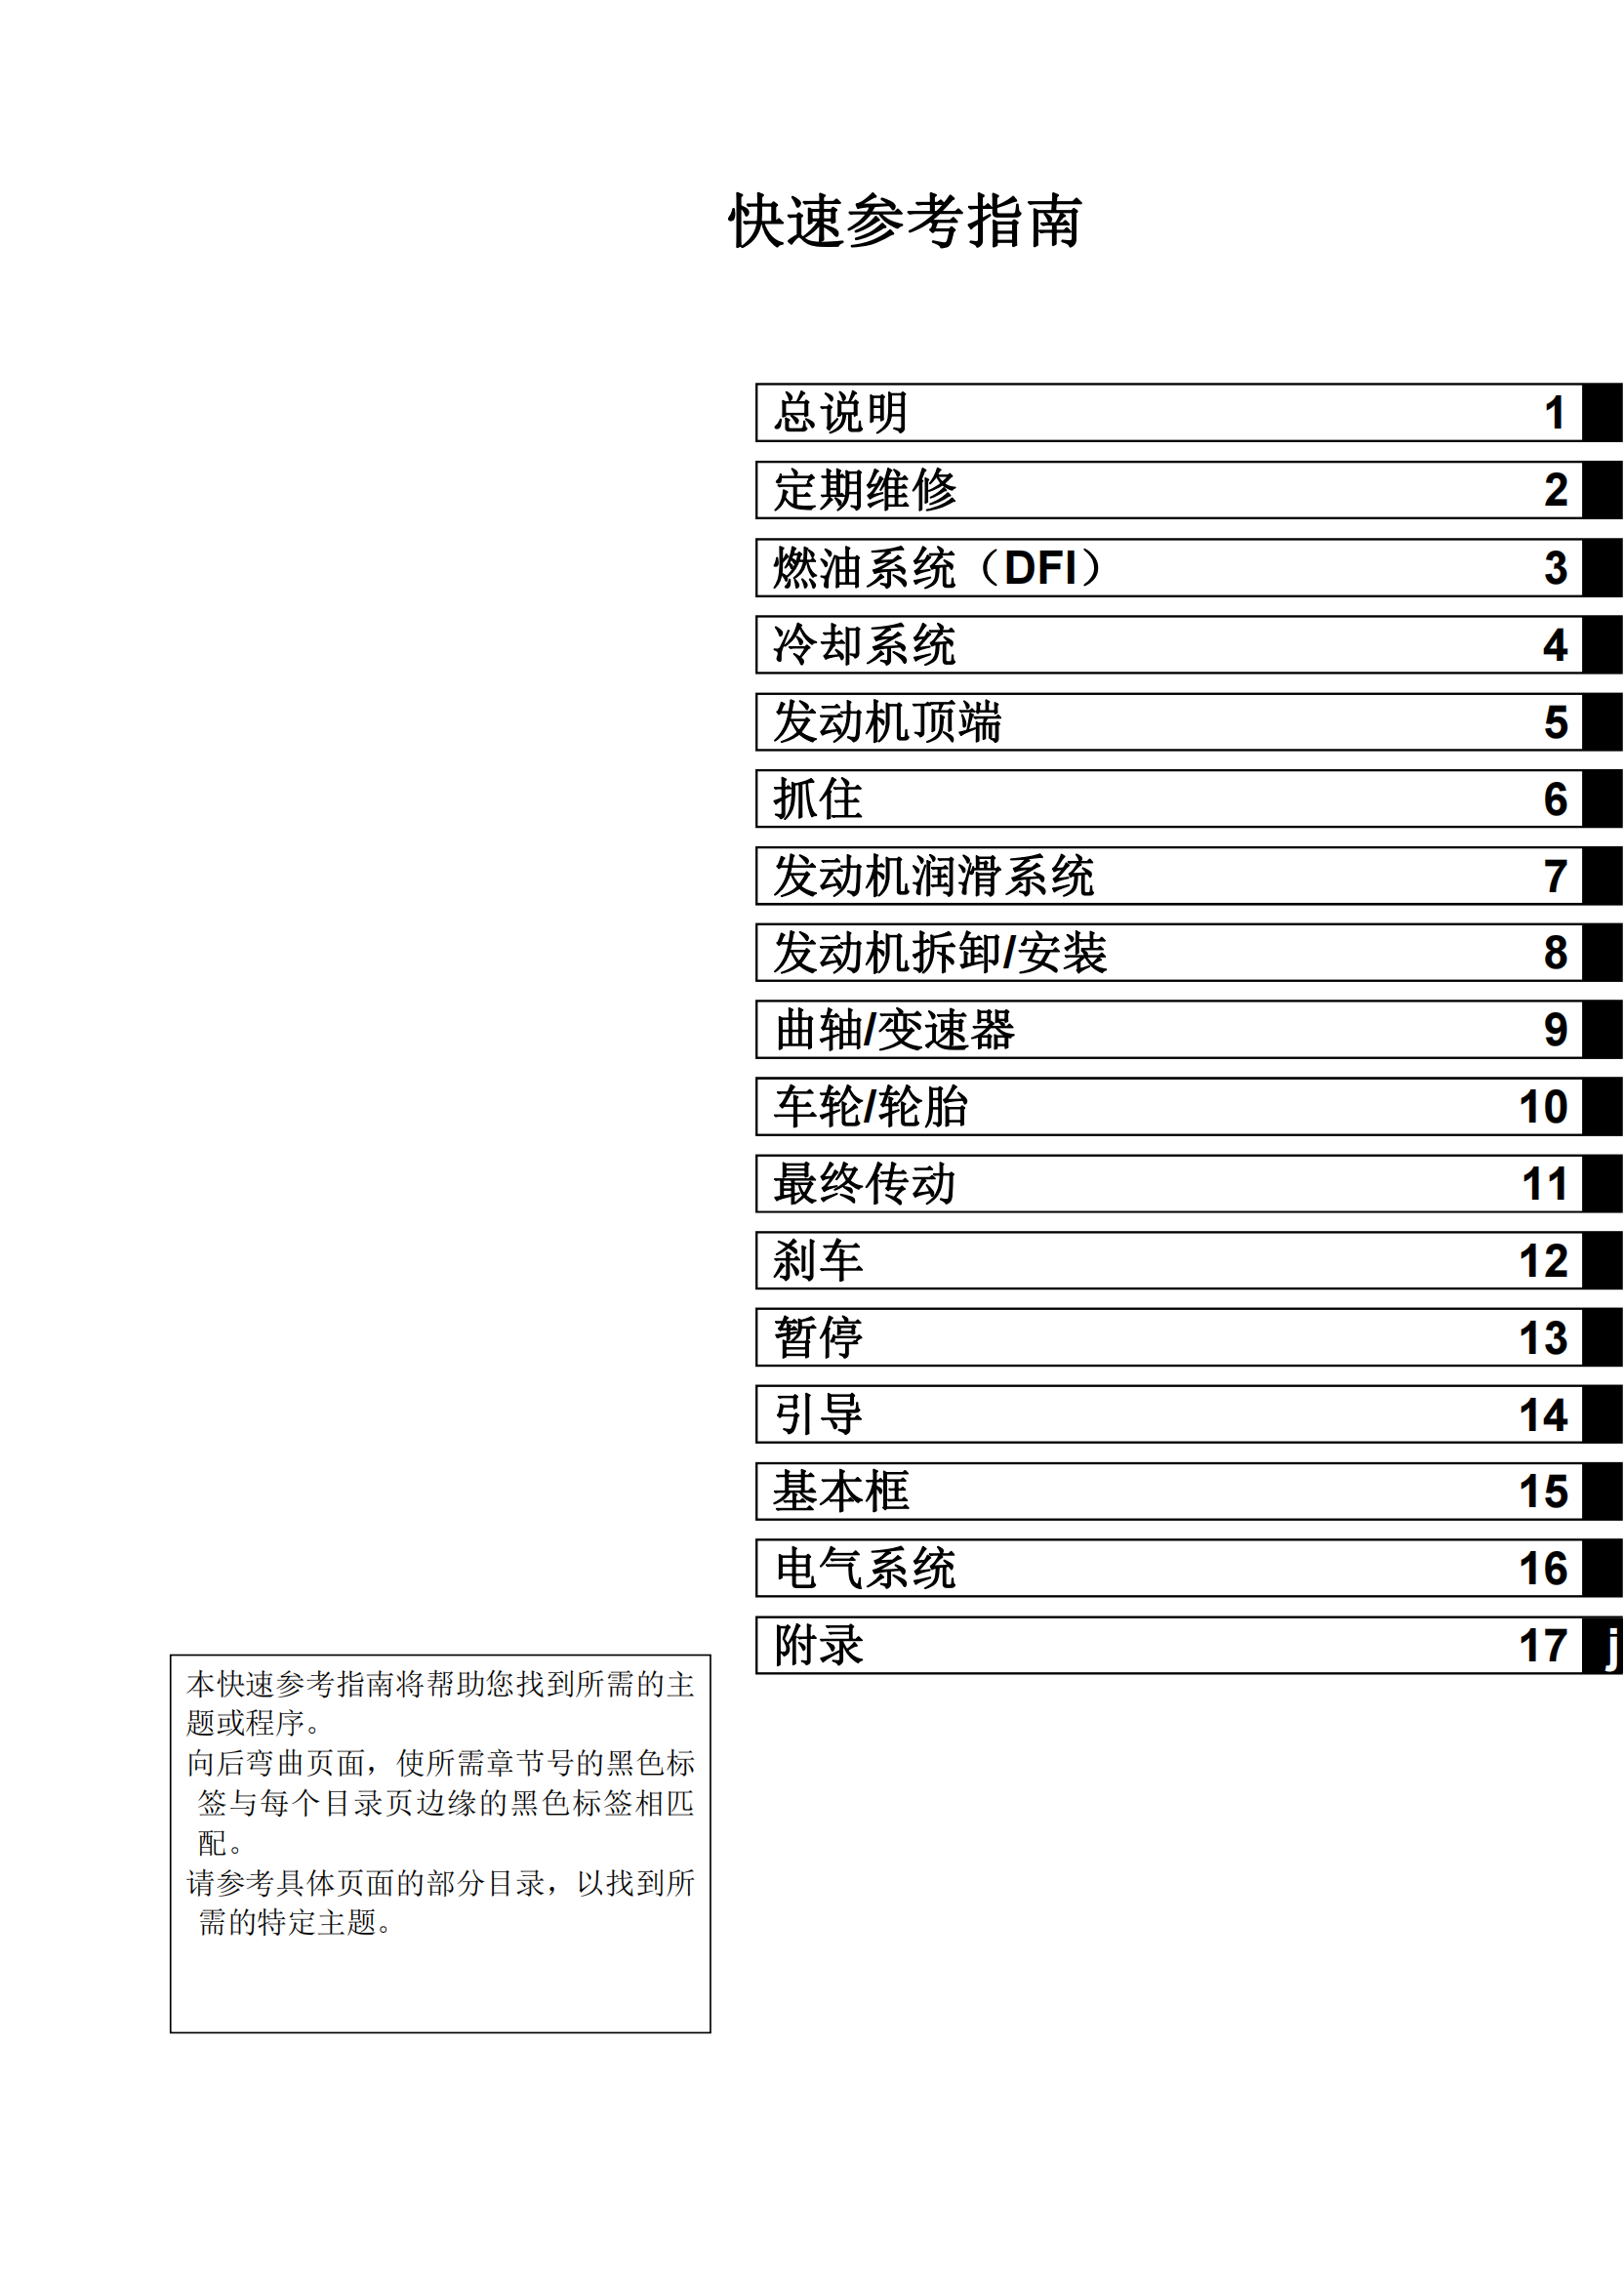 简体中文2011-2014年川崎异兽1000 Kawasaki Versys 1000 维修手册插图1